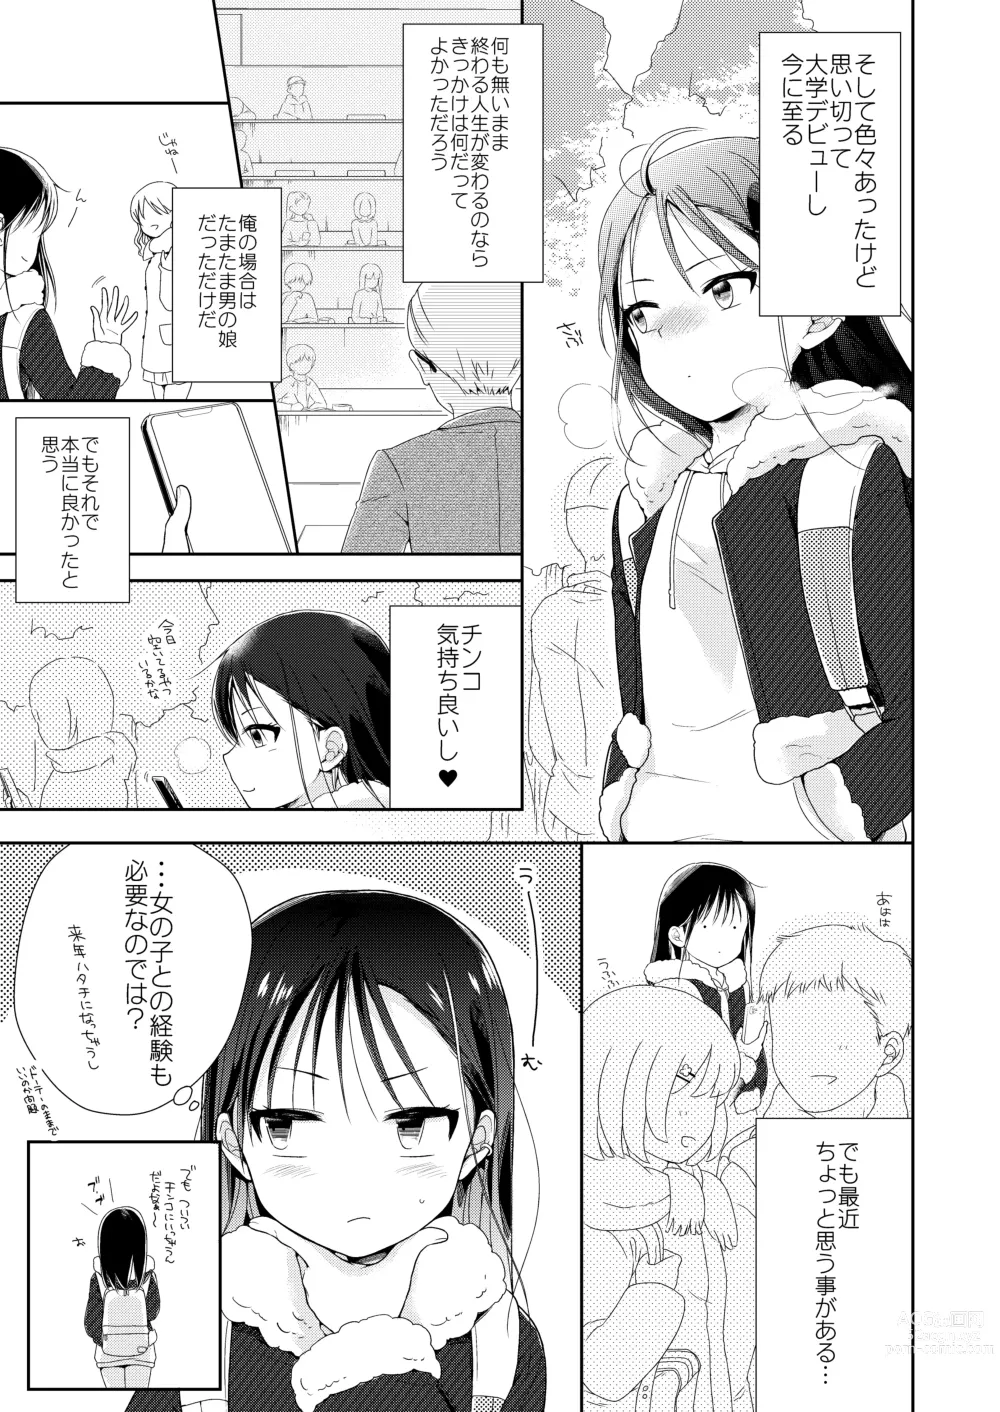 Page 6 of doujinshi Otokonoko x Otokonoko = Saikou